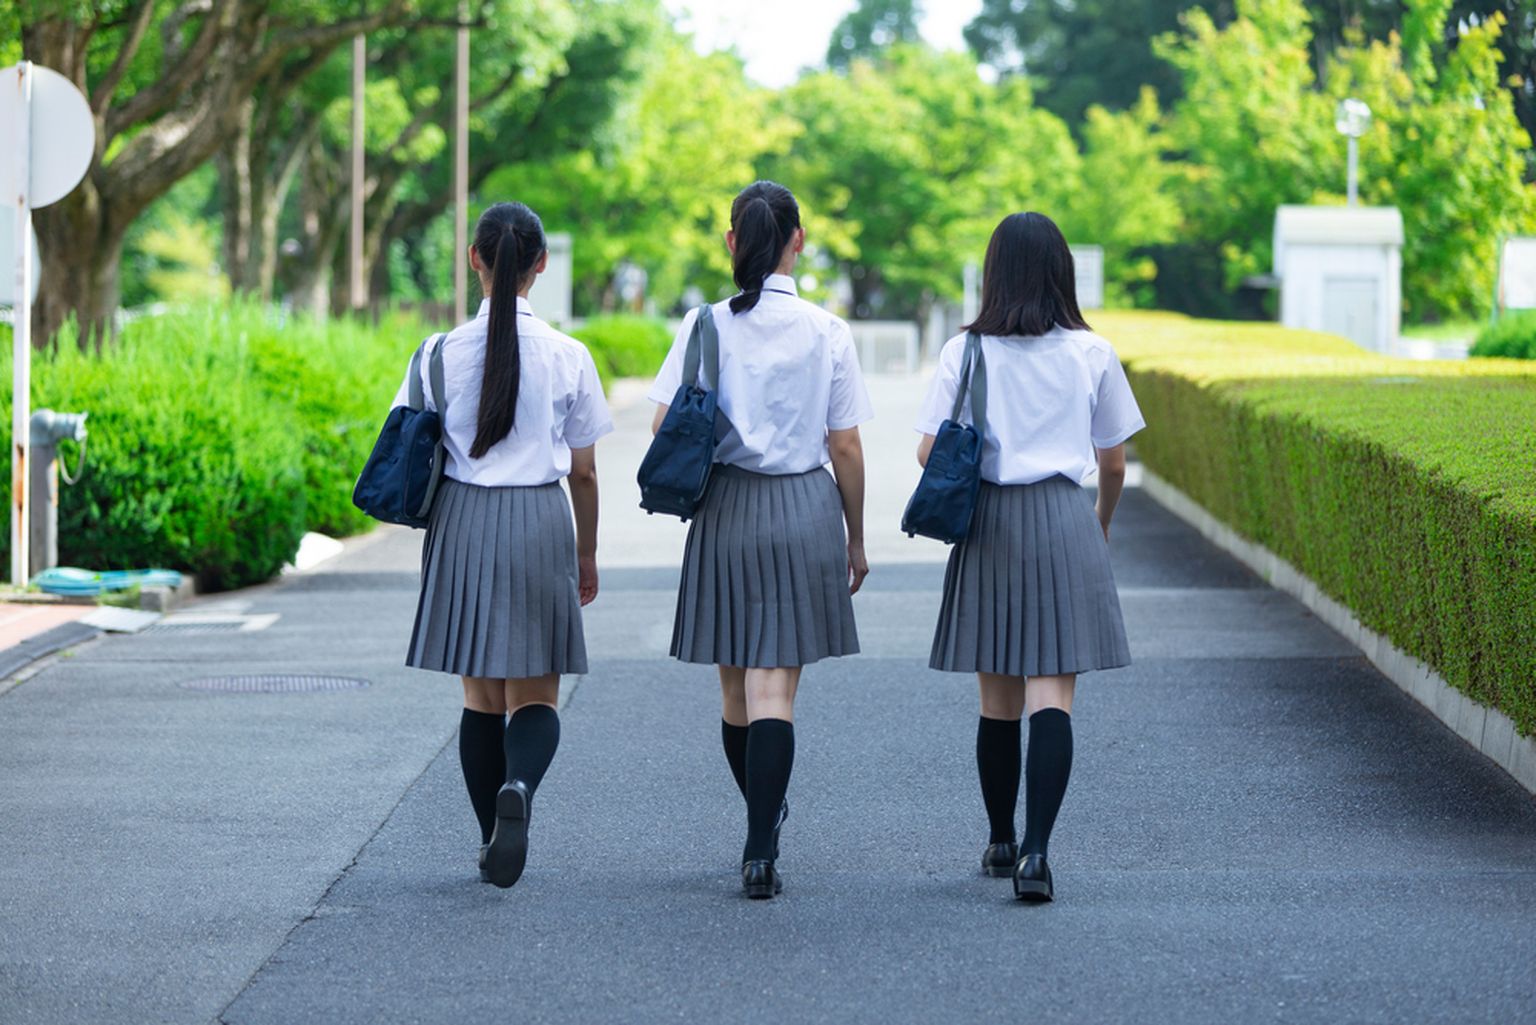 Koolitüdrukud kogevad vormi kandes seksuaalset ahistamist